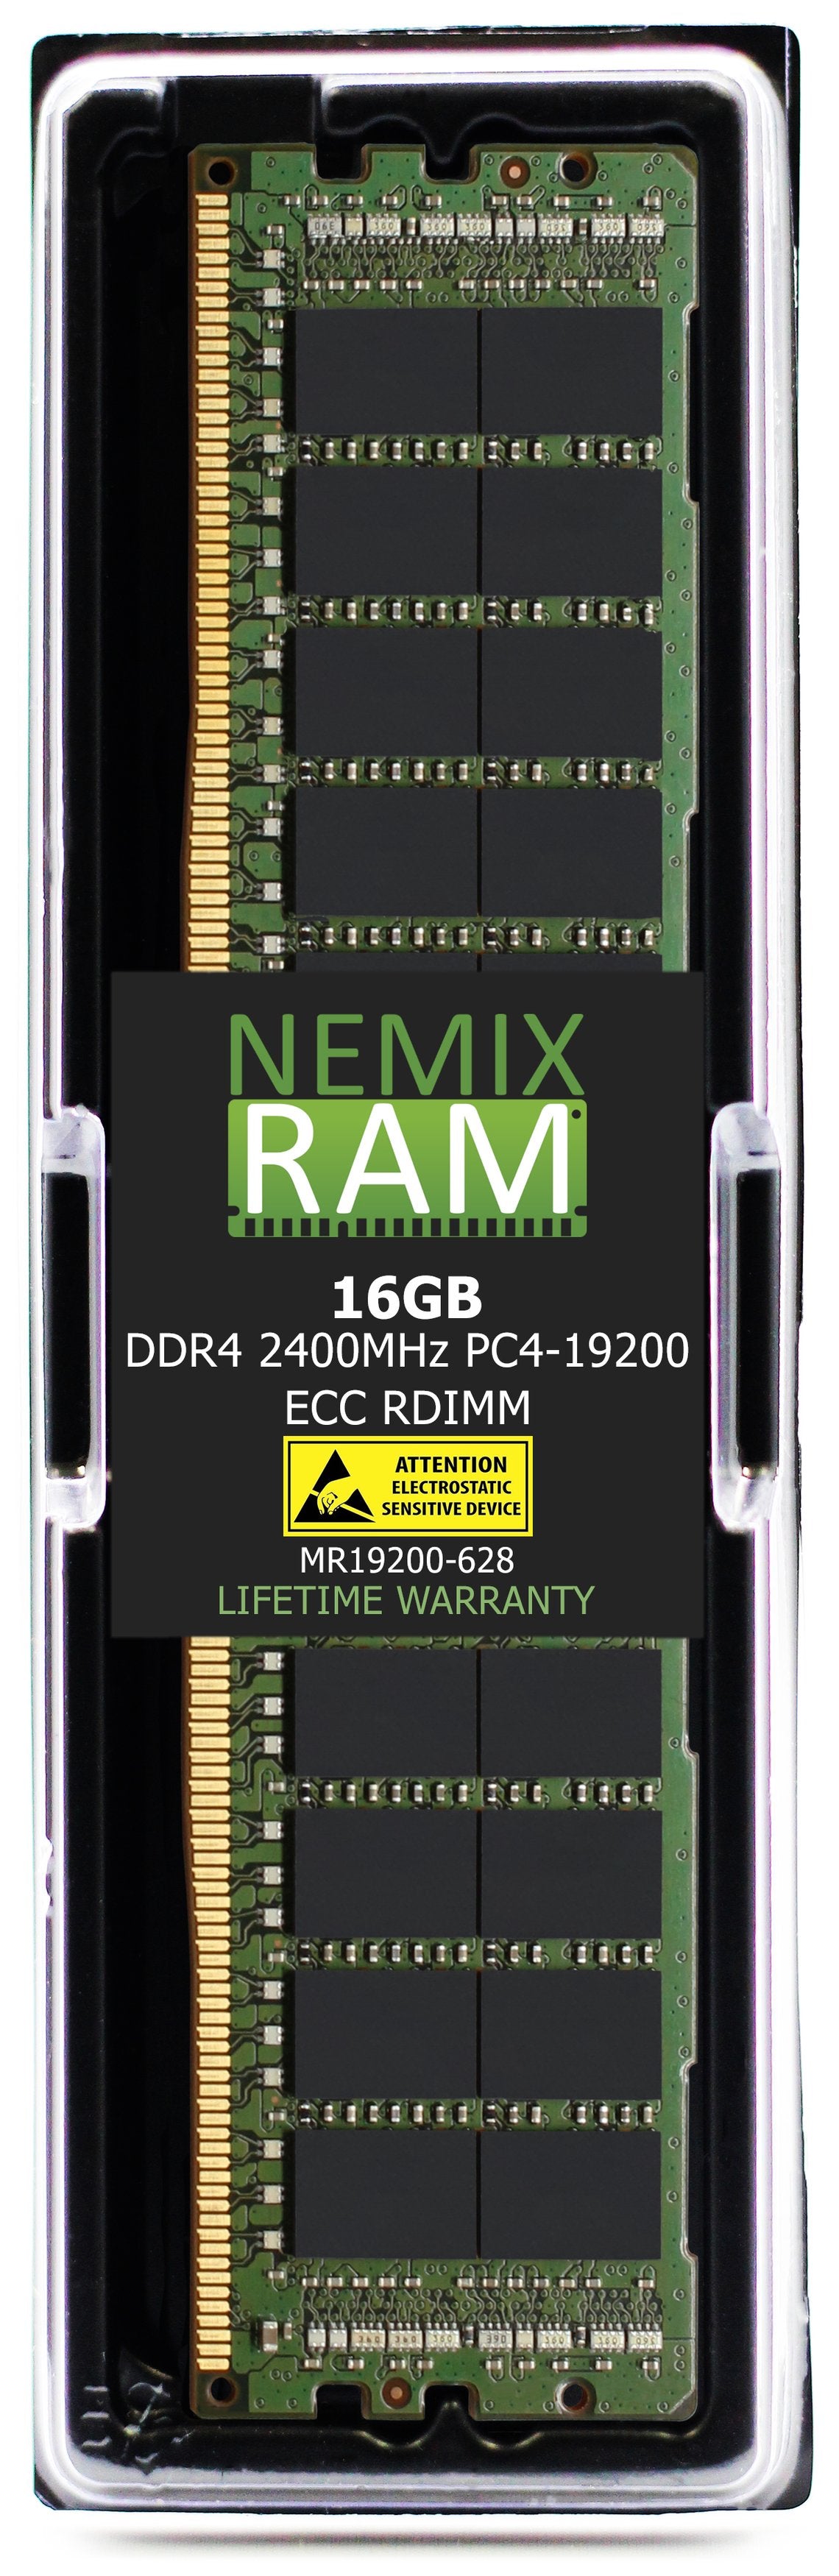 DELL SNPHNDJ7C/16G A8711887 16GB DDR4 2400MHZ PC4-19200 RDIMM Compatible Upgrade